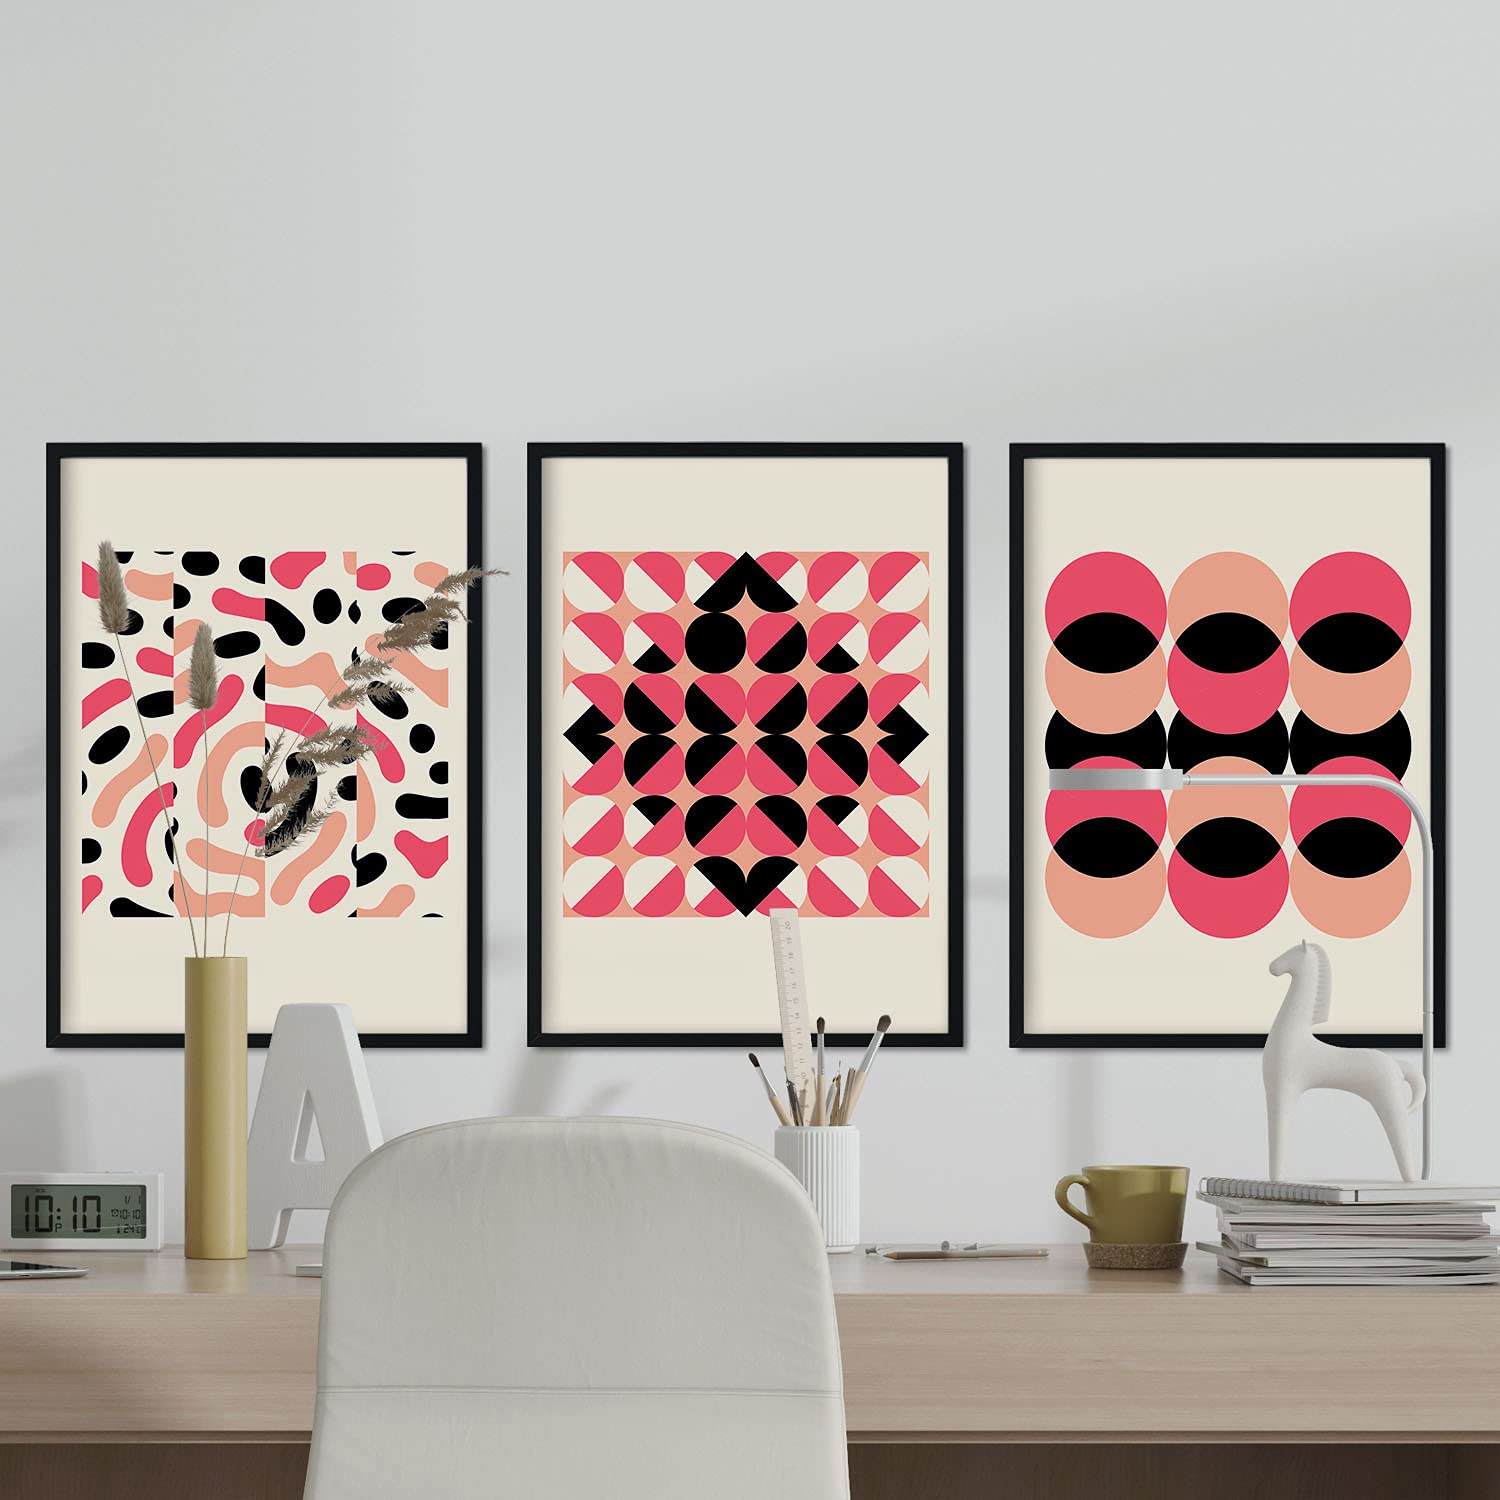 Pack de láminas Set rosa 1. Pósters con ilustraciones abstractas en estilo geométrico. Tonos rosados y pastel.-Artwork-Nacnic-Nacnic Estudio SL